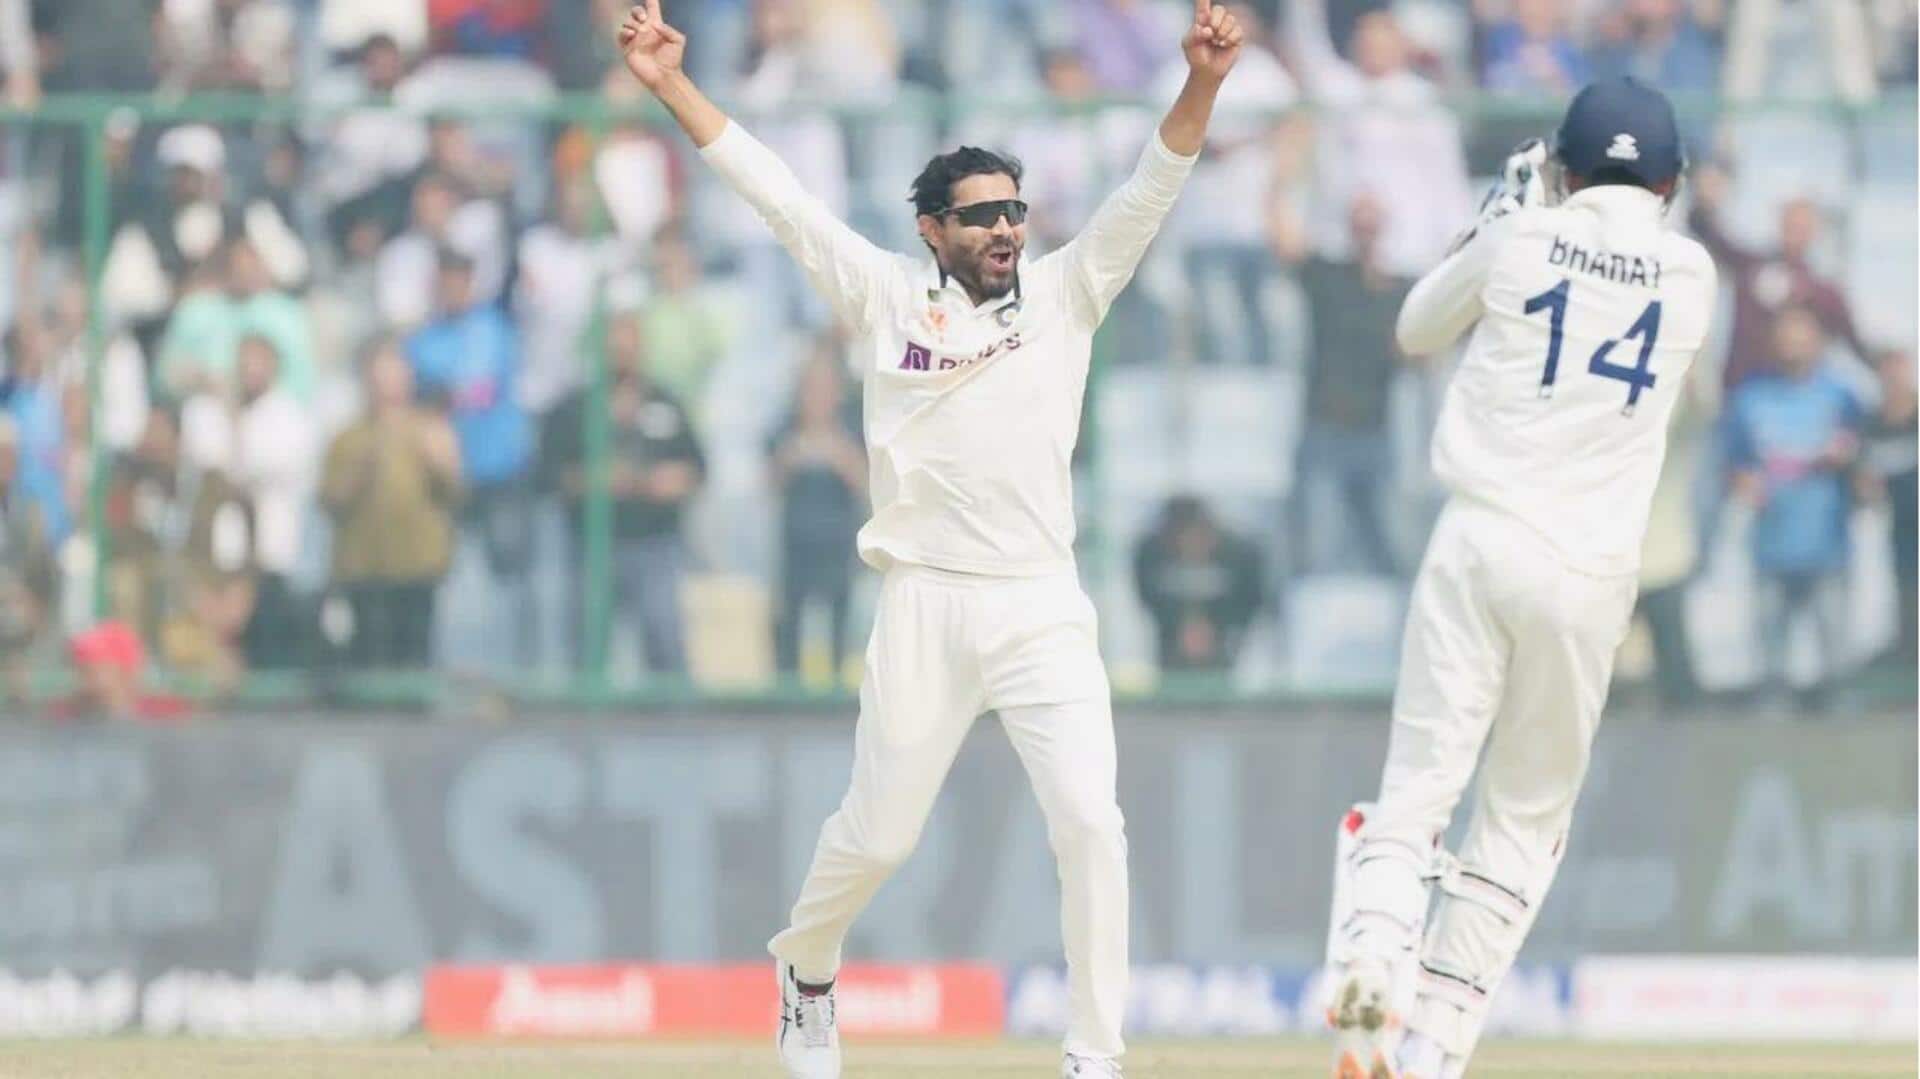 ICC टेस्ट रैंकिंग: ऑलराउंडर्स की सूची में भारत का जलवा, टॉप-5 में 3 भारतीय मौजूद